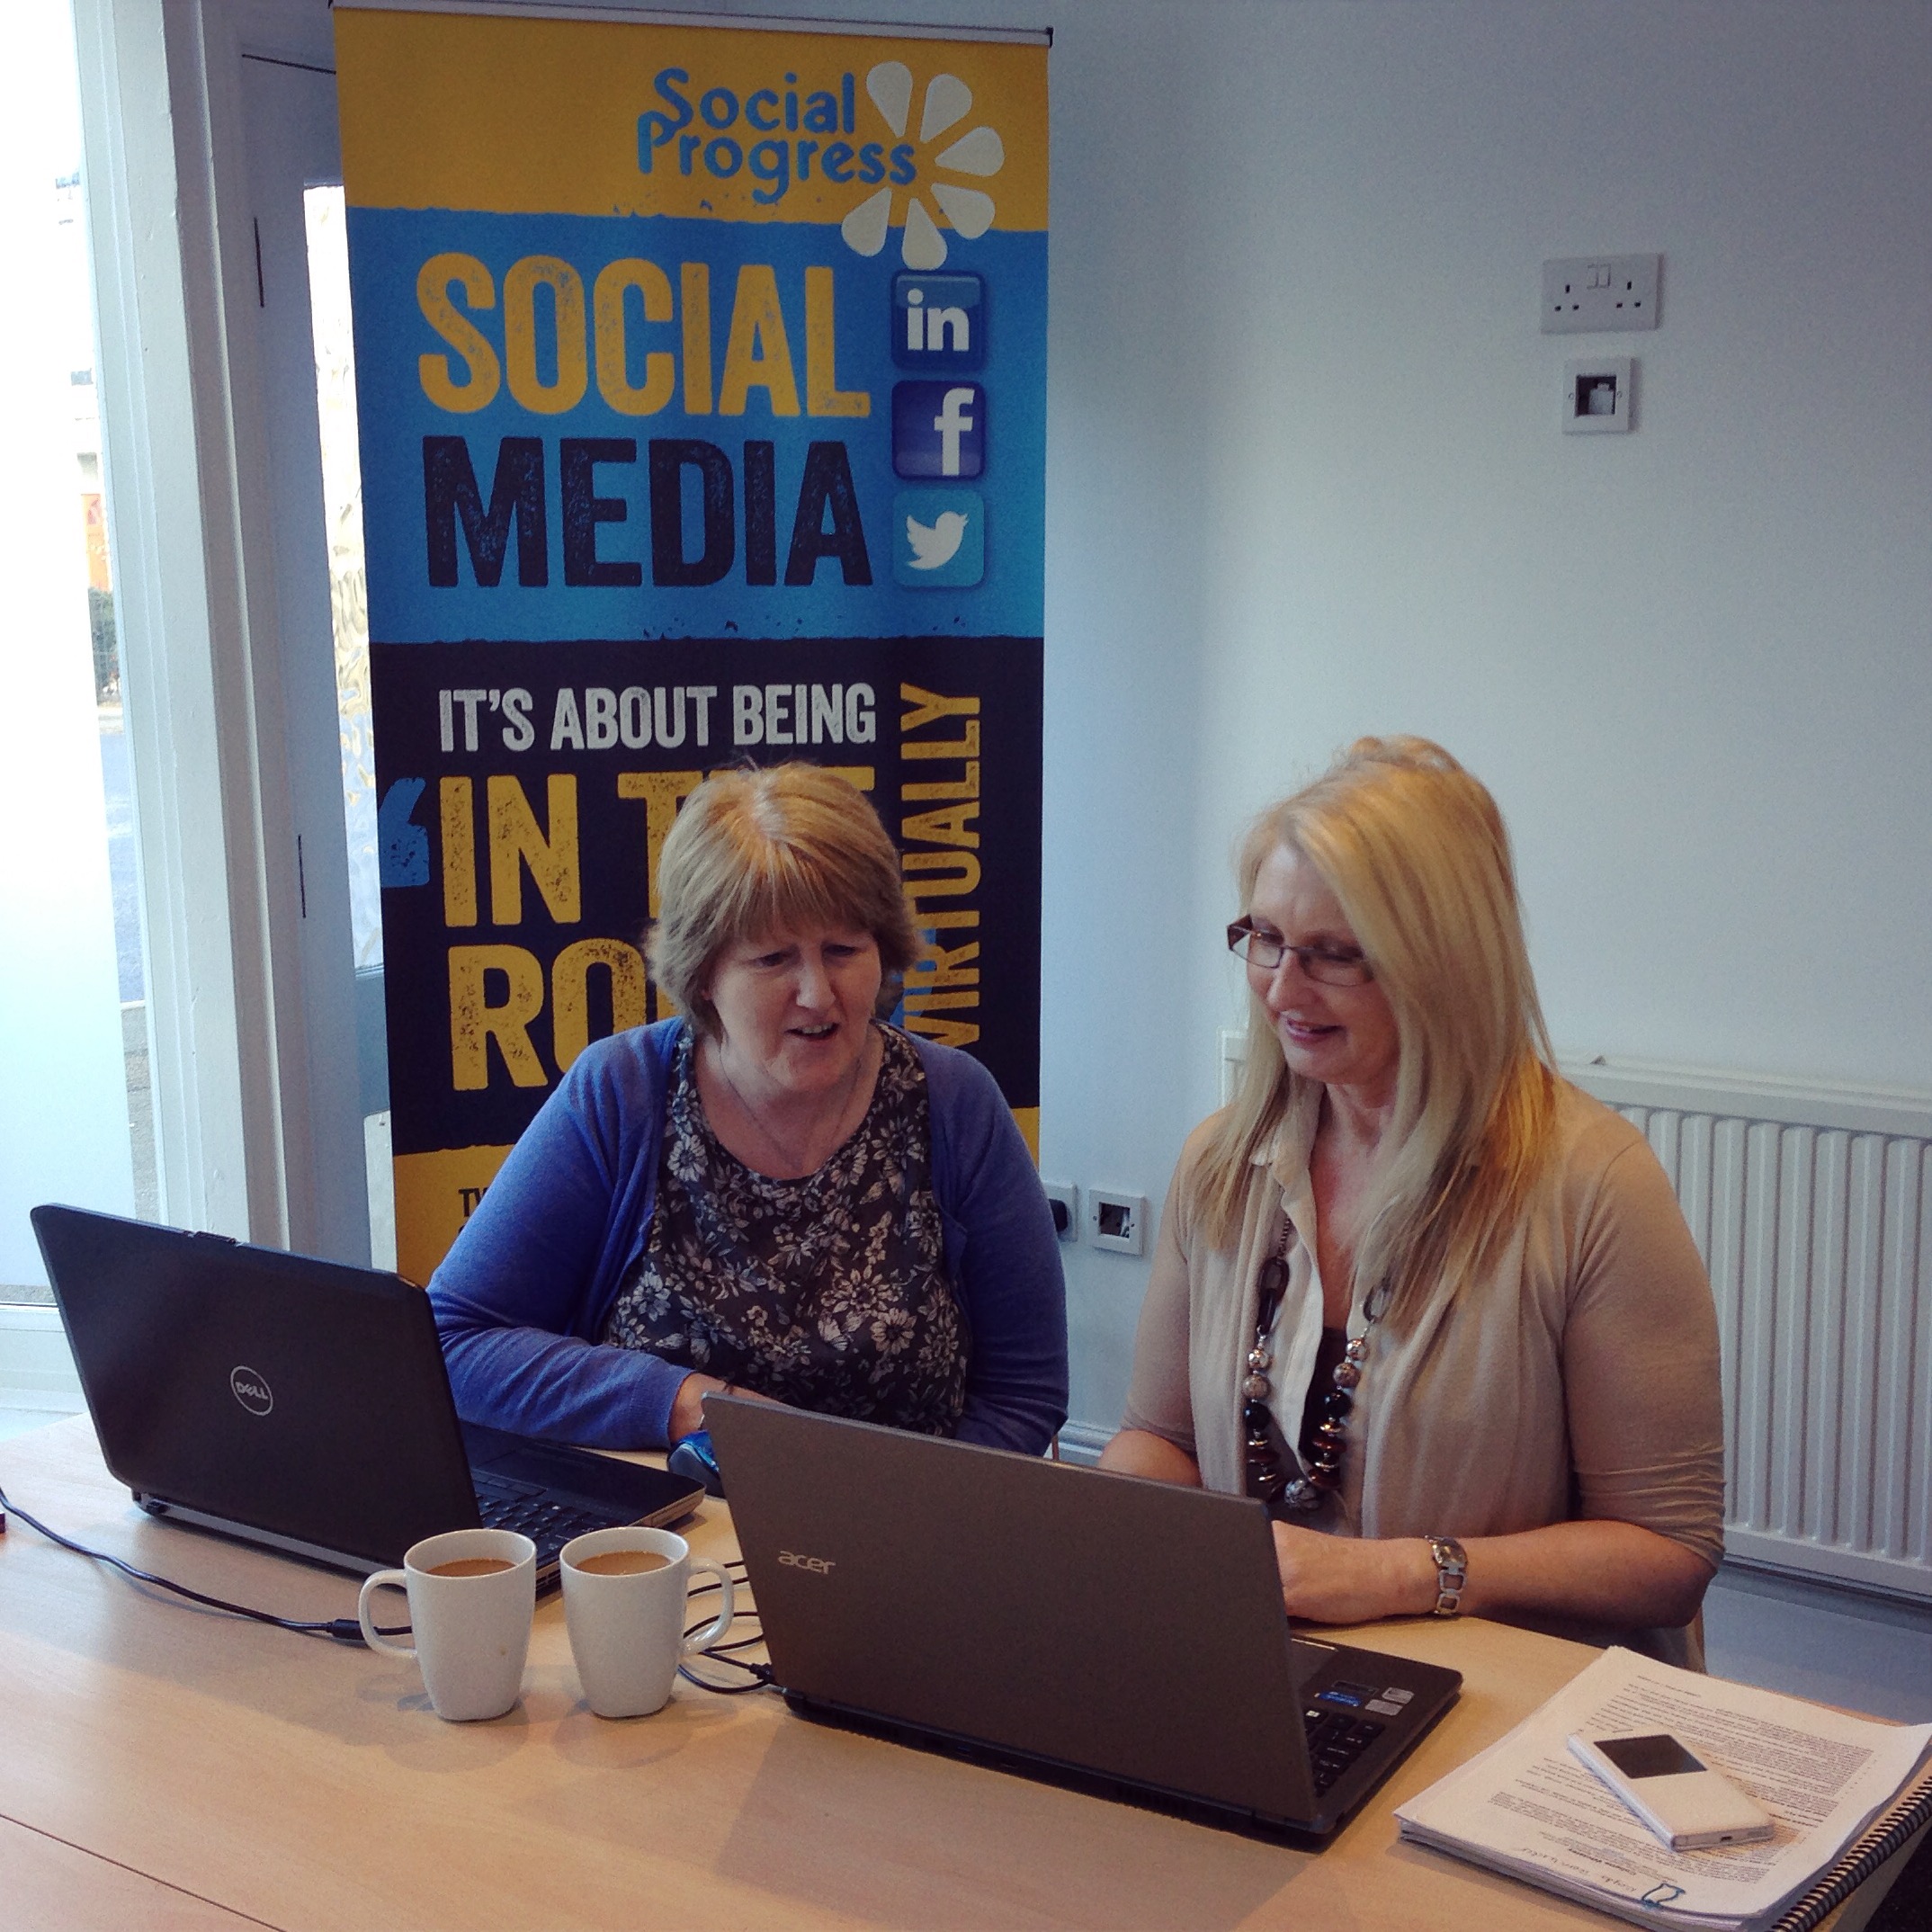 Social Progress - Social Media Training - Huddersfield